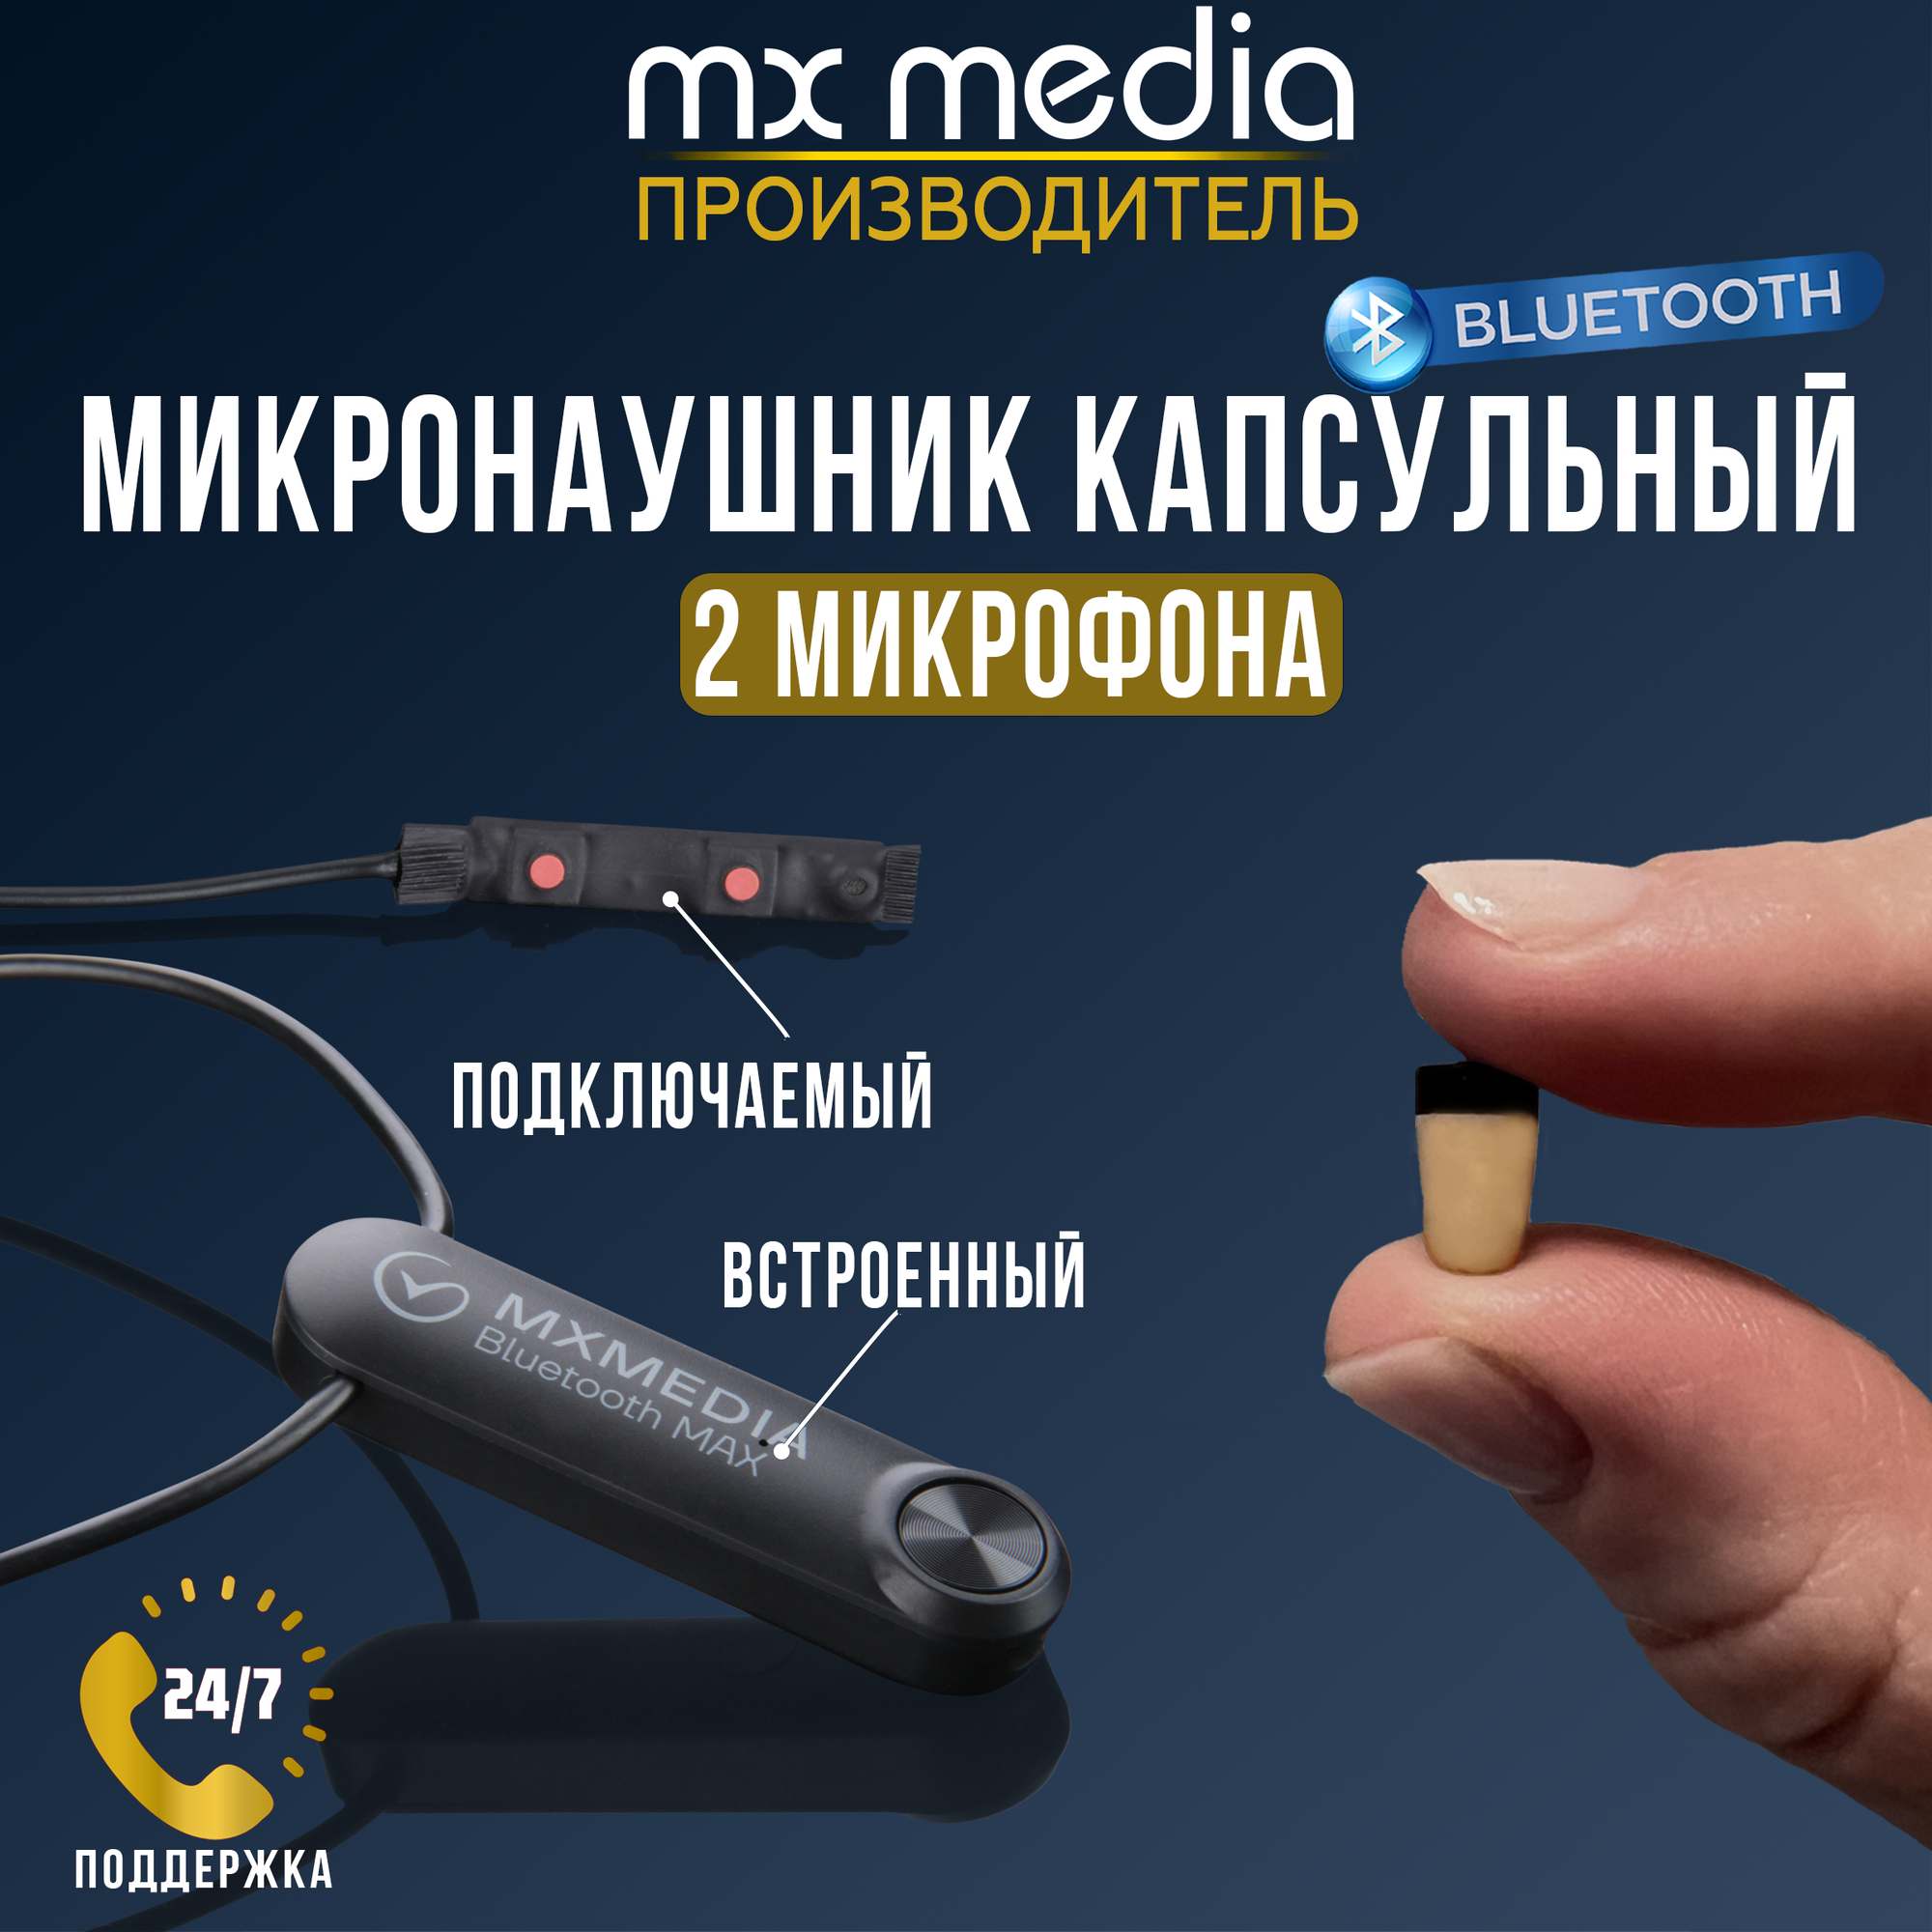 Микронаушник Mxmedia Bluetooth Pico капсульный с выведенным микрофоном и кнопкой пищалкой